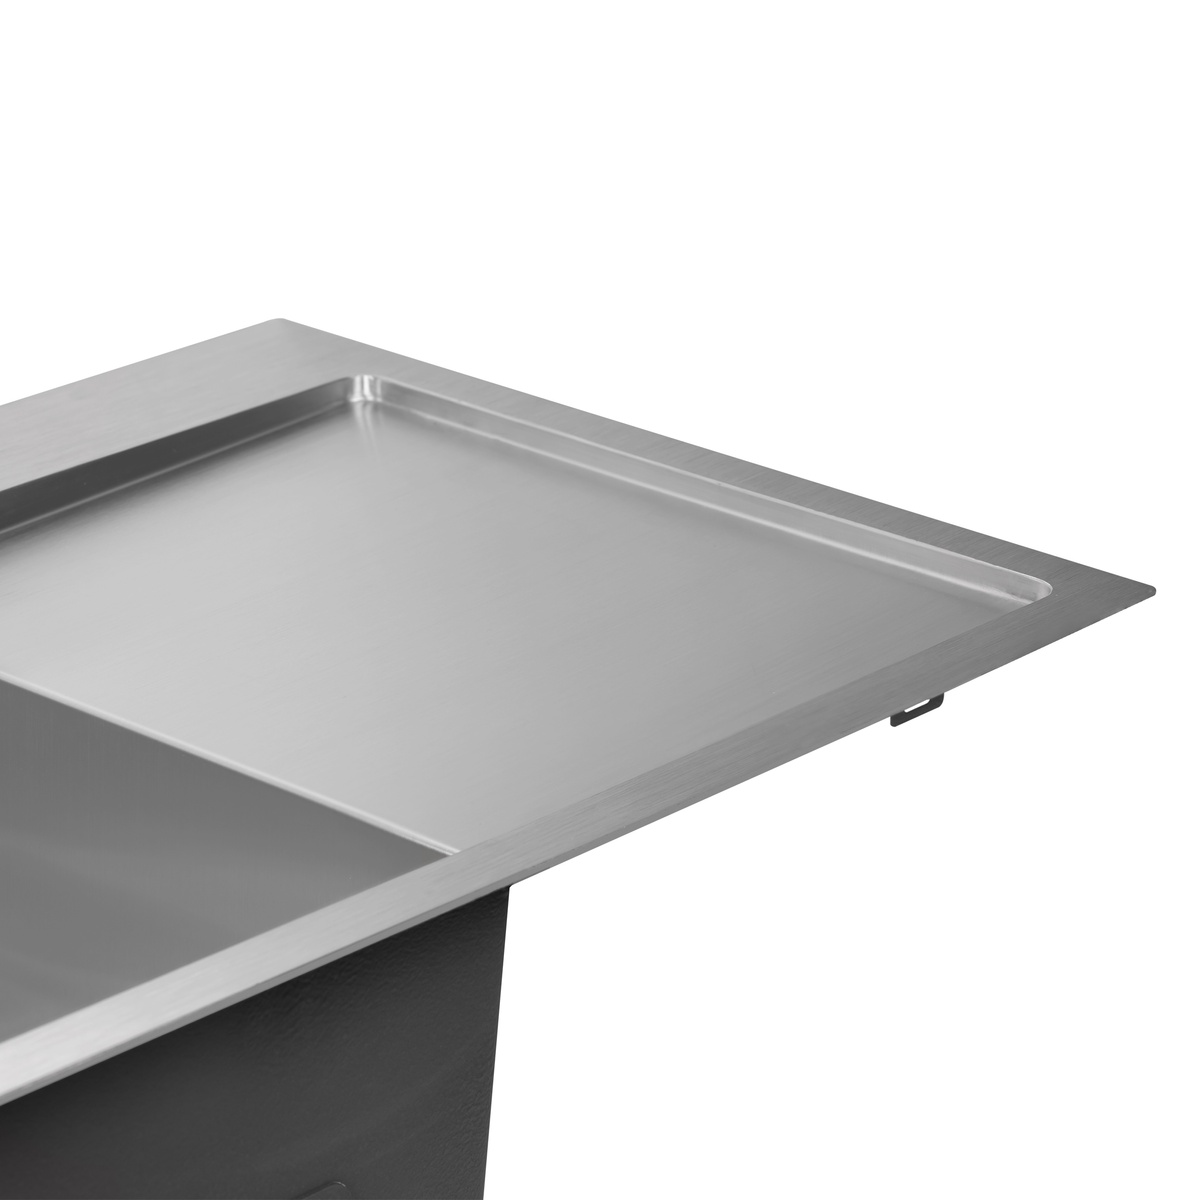 Кухонная мойка из нержавейки прямоугольная врезная под столешницу Q-TAP 500мм x 780мм матовая 3мм с сифоном QTDK7850LSET3012